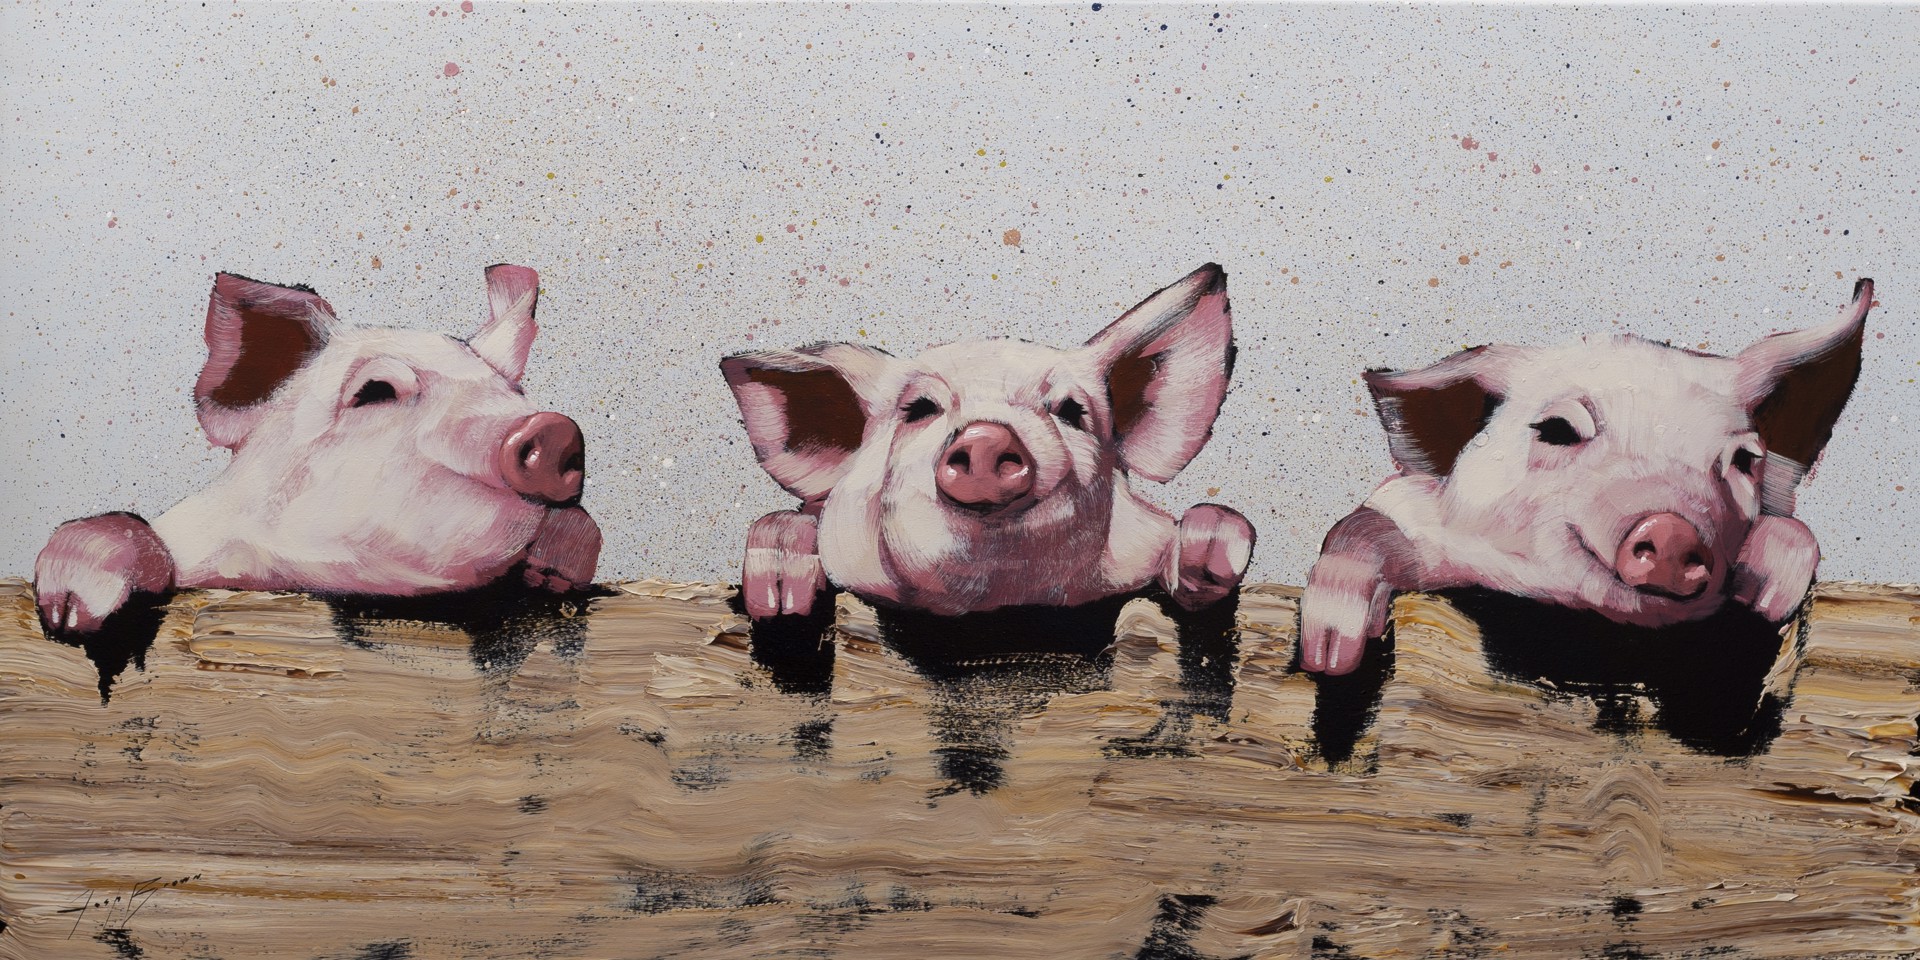 Three Pigs on Blue Sprinkles by Josh Brown